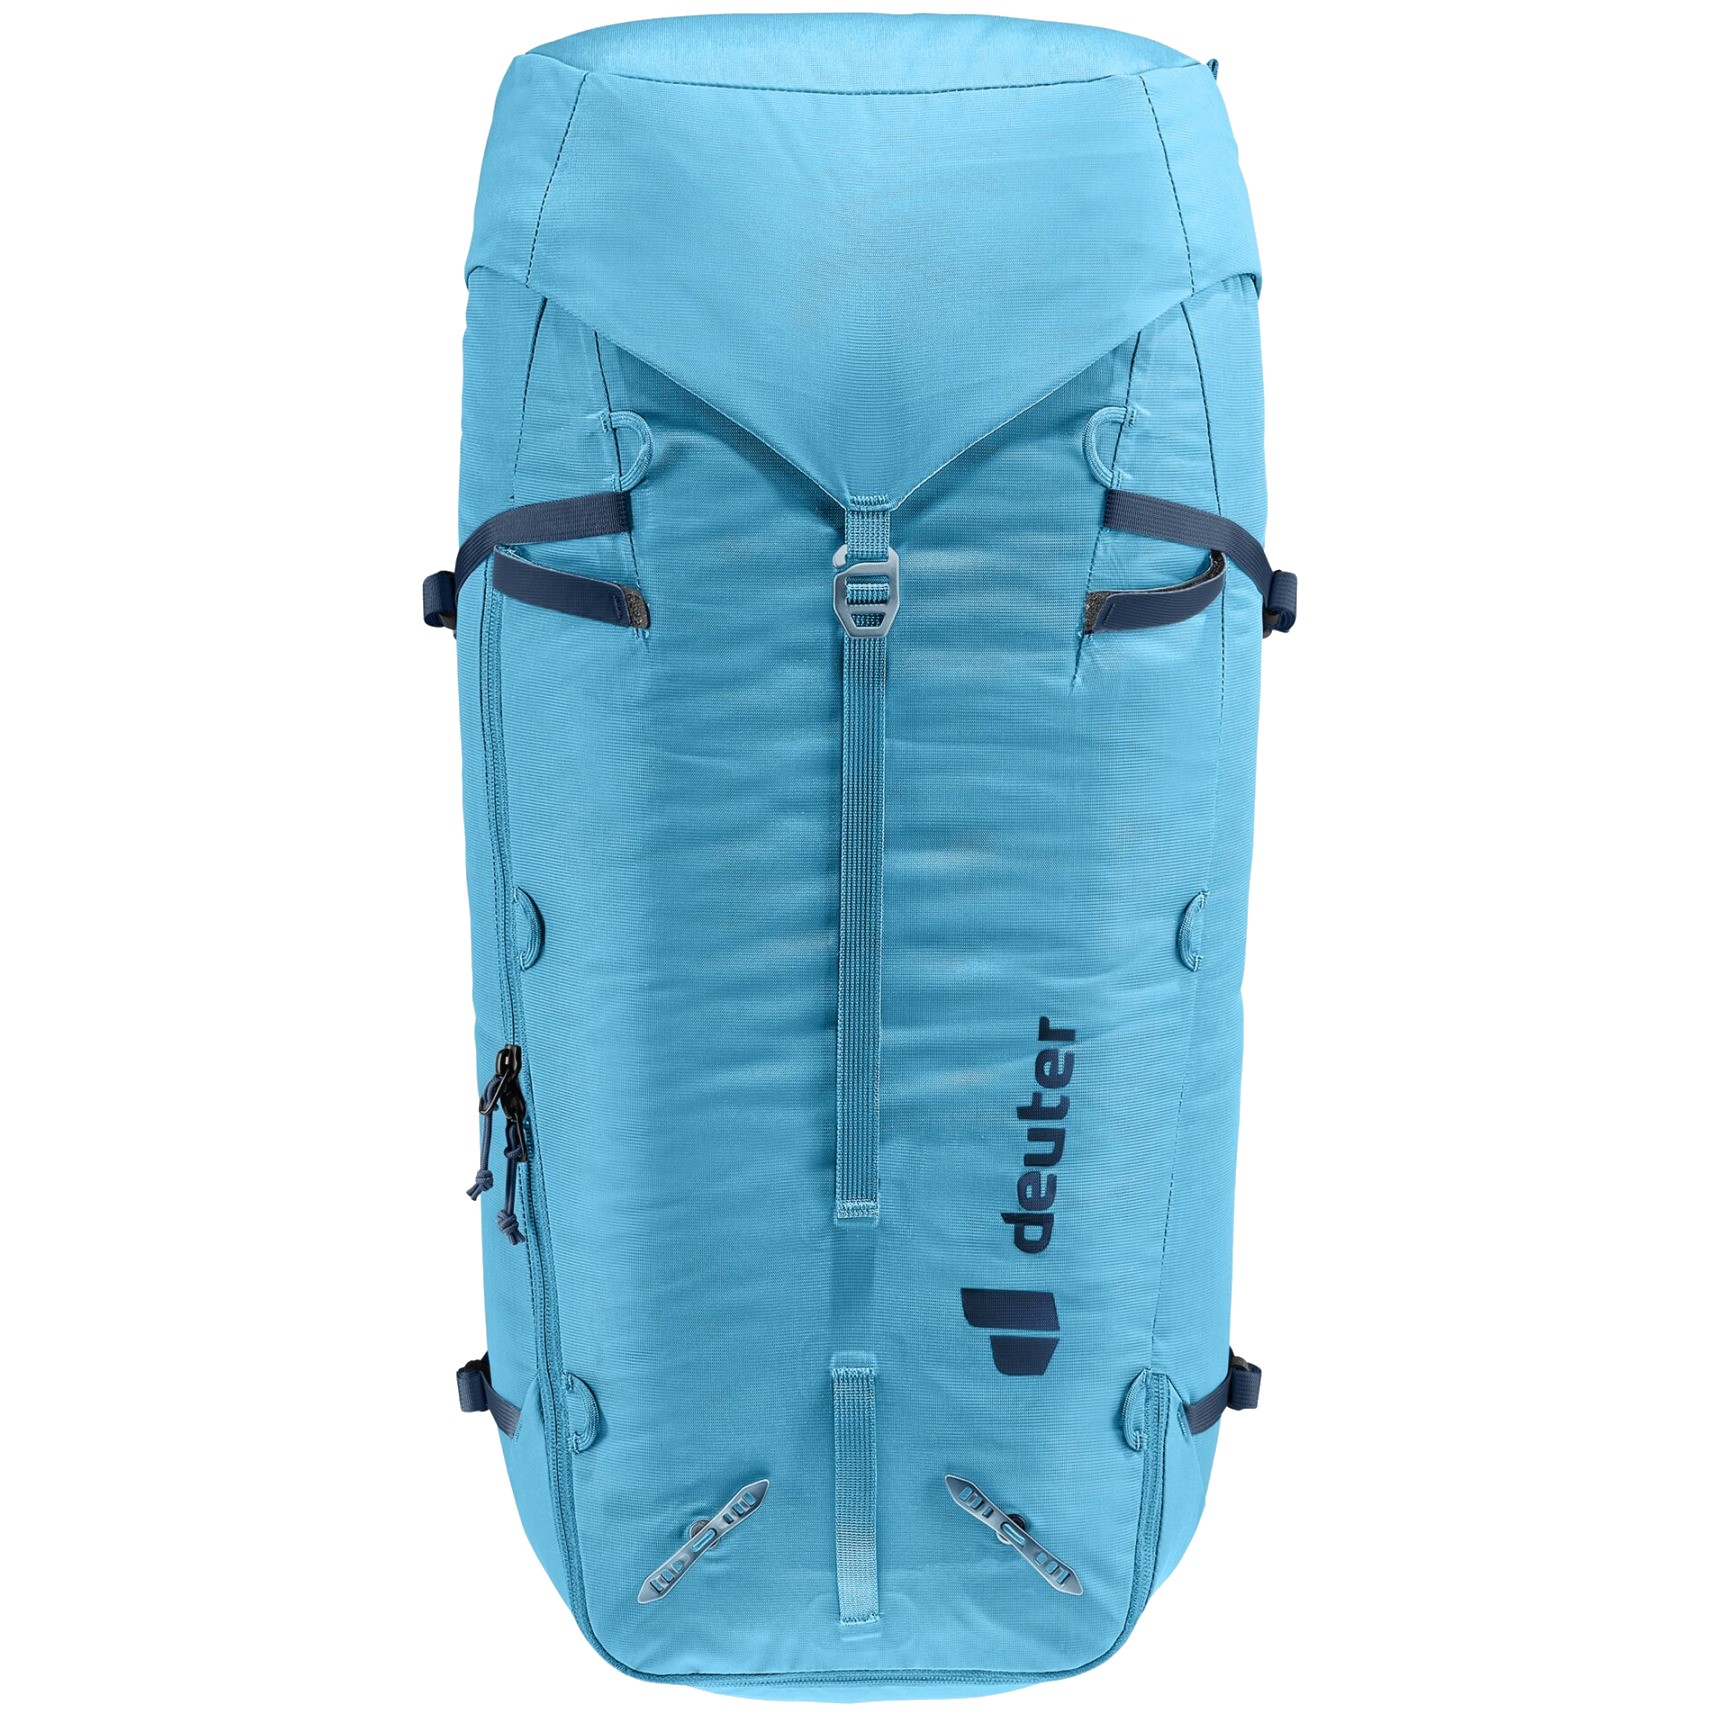 Deuter Guide 44+  Technical Alpine Climbing Backpack